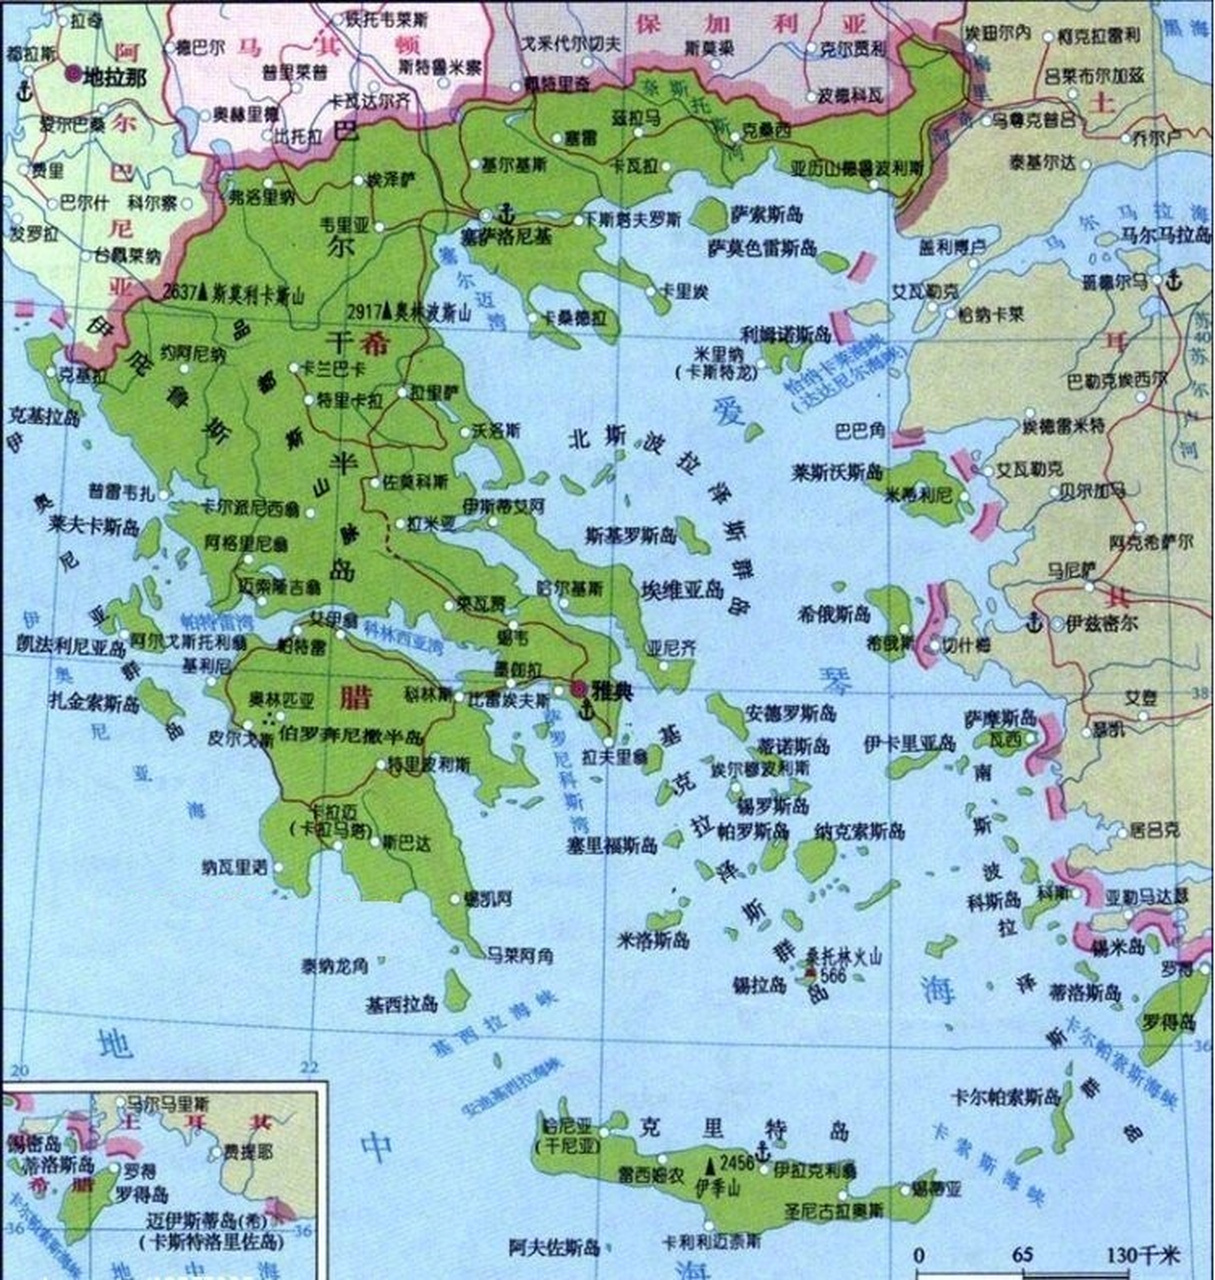 【这才是真正的自古以来:希腊领海的十二段线】图为希腊领海的九段线